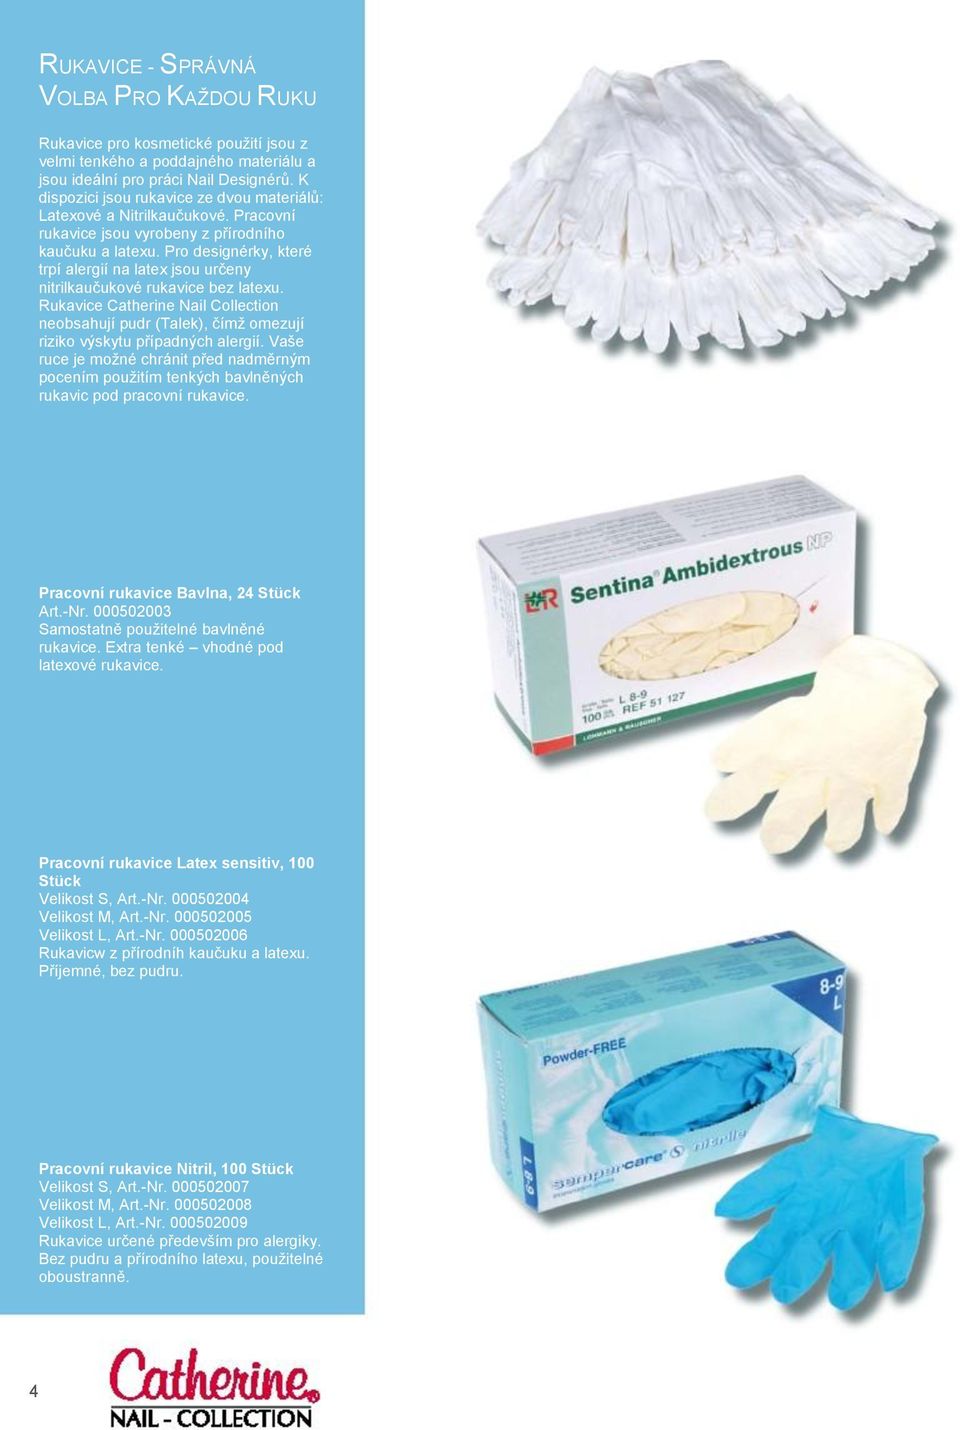 Pro designérky, které trpí alergií na latex jsou určeny nitrilkaučukové rukavice bez latexu. Rukavice Catherine Nail Collection neobsahují pudr (Talek), čímţ omezují riziko výskytu případných alergií.